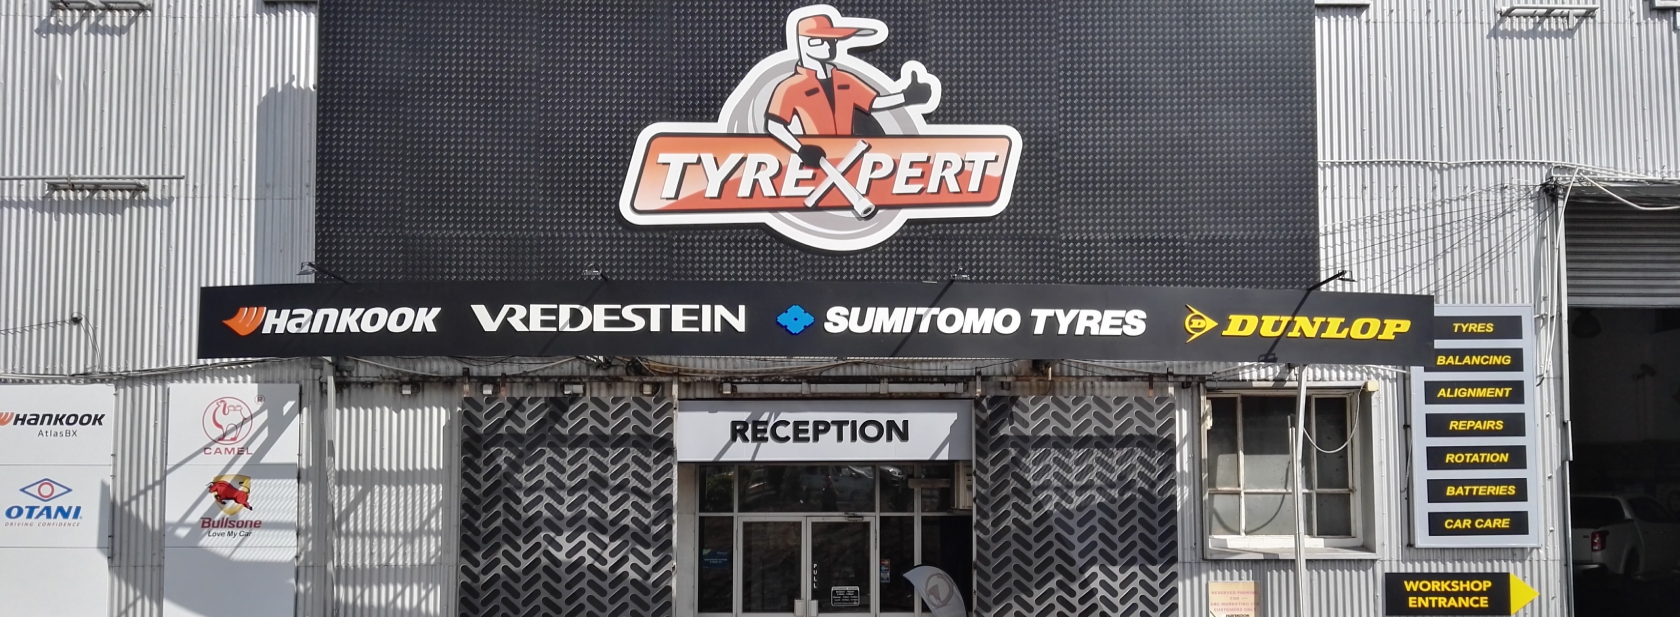 Tyrexpert outlet